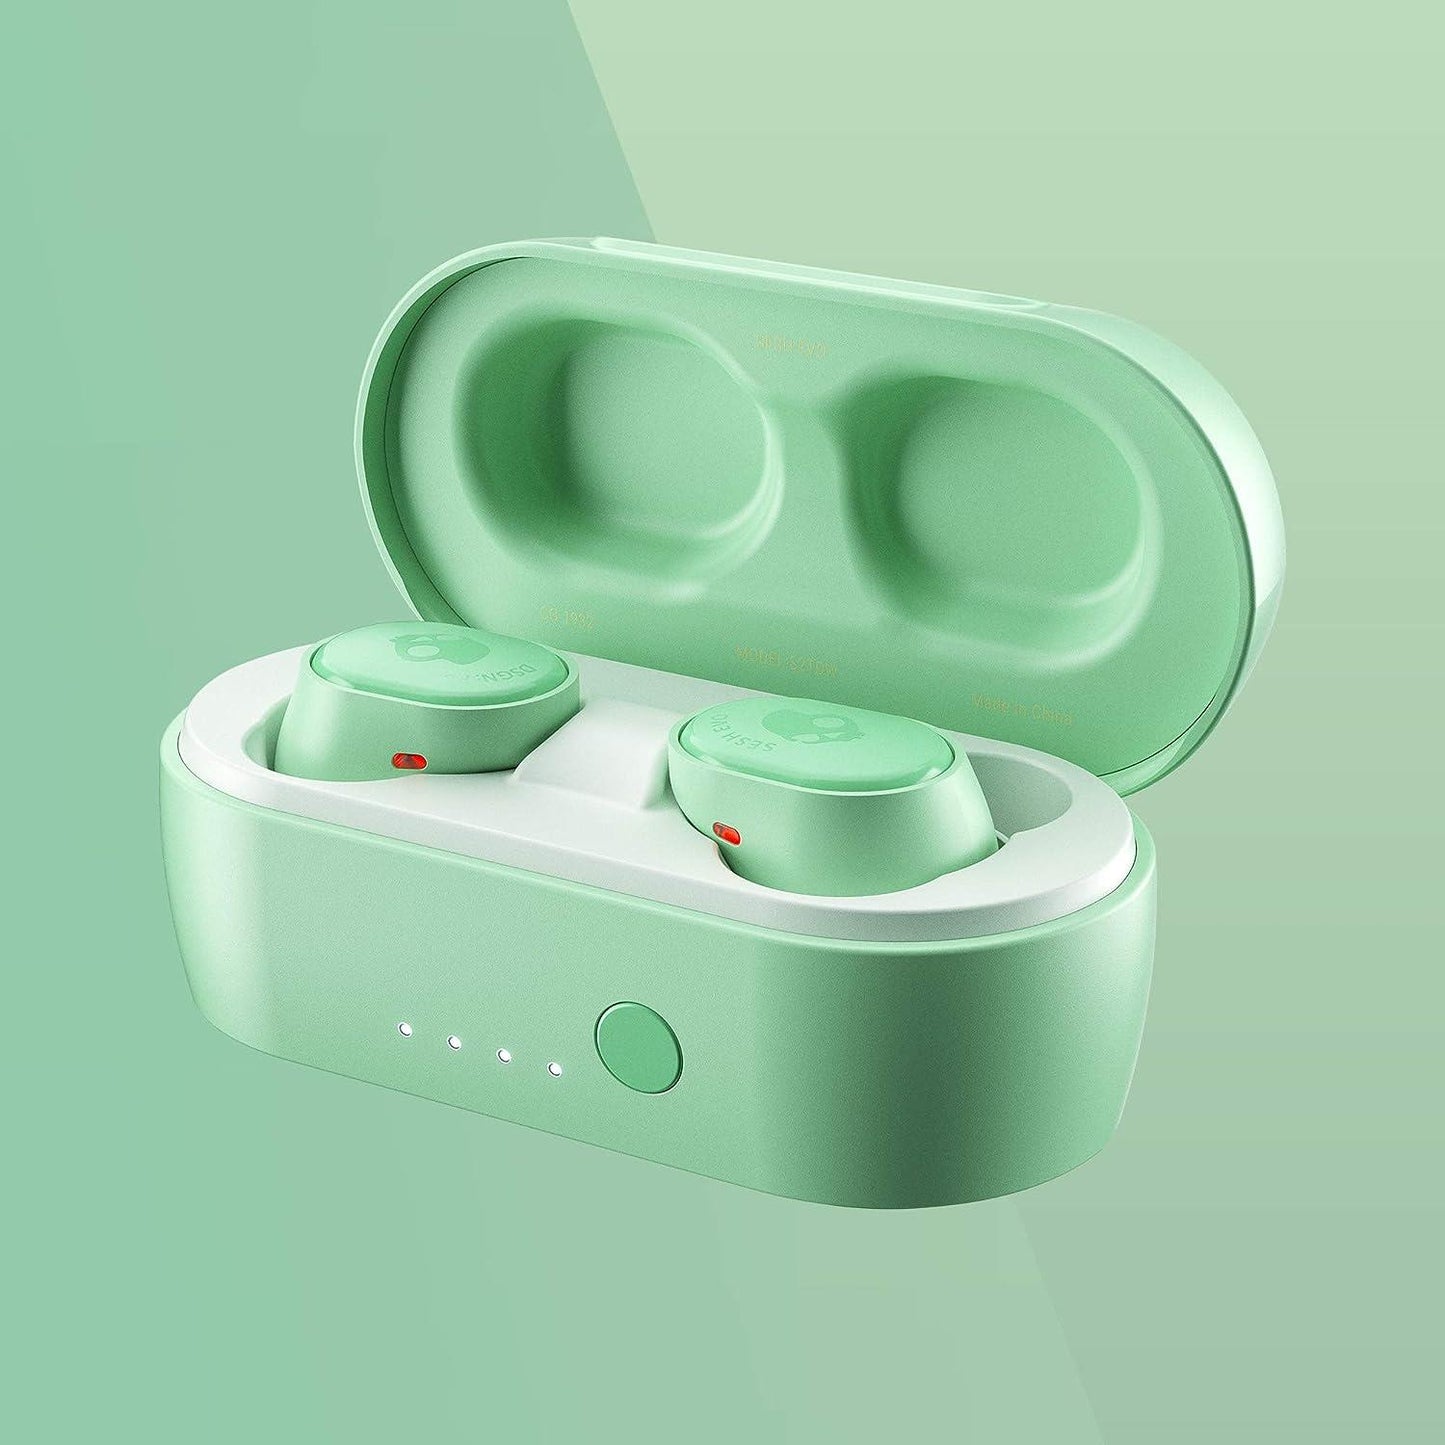 Skullcandy Sesh Evo In-Ear Wireless Earbuds - Pure Mint